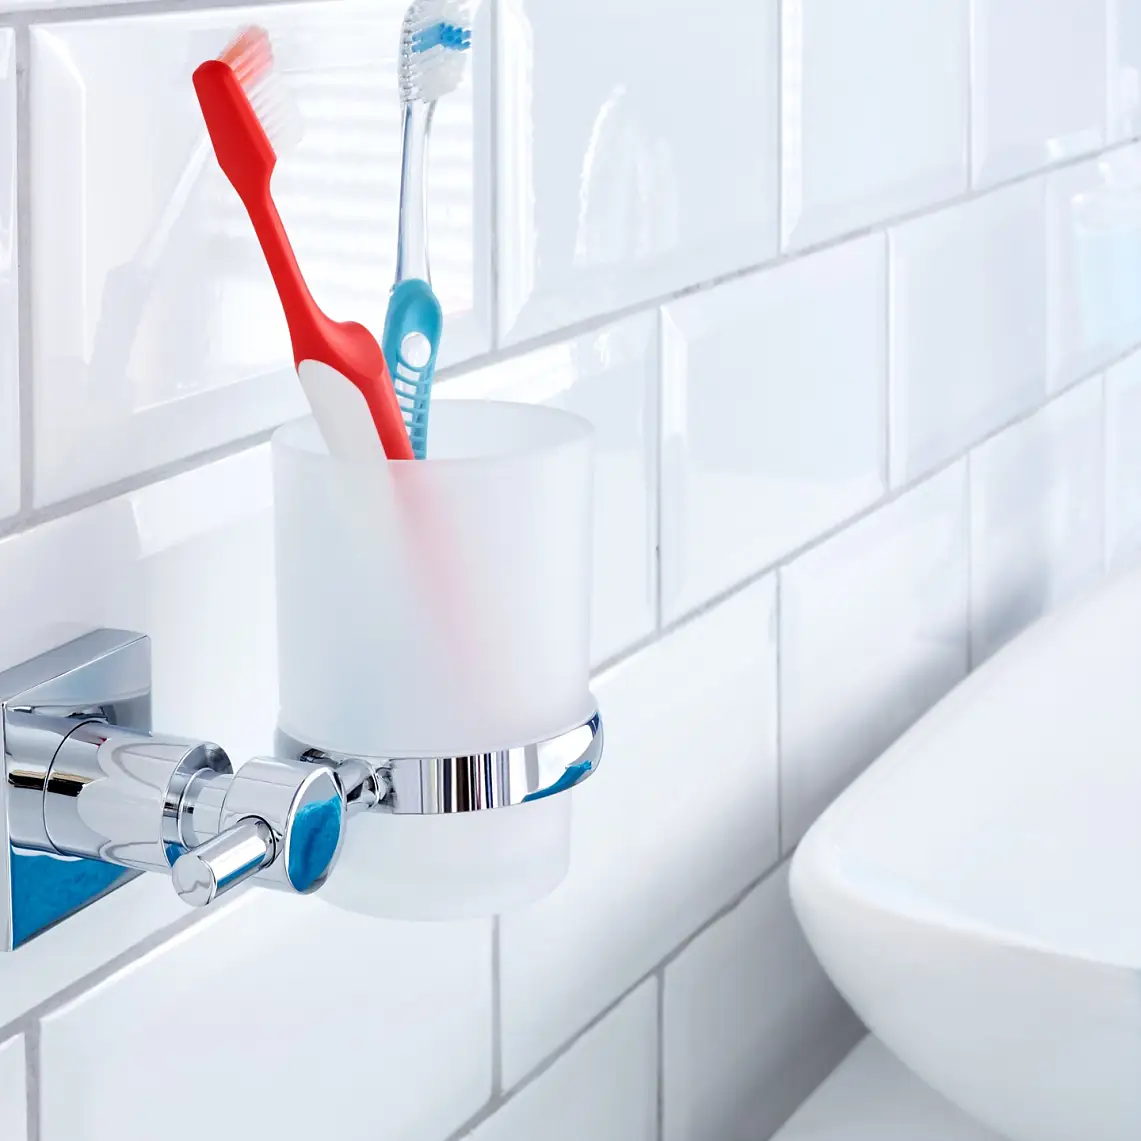 Låt inte ditt tandborstglas ta upp plats på handfatet. Förvara det där det ska vara och ser bäst ut.